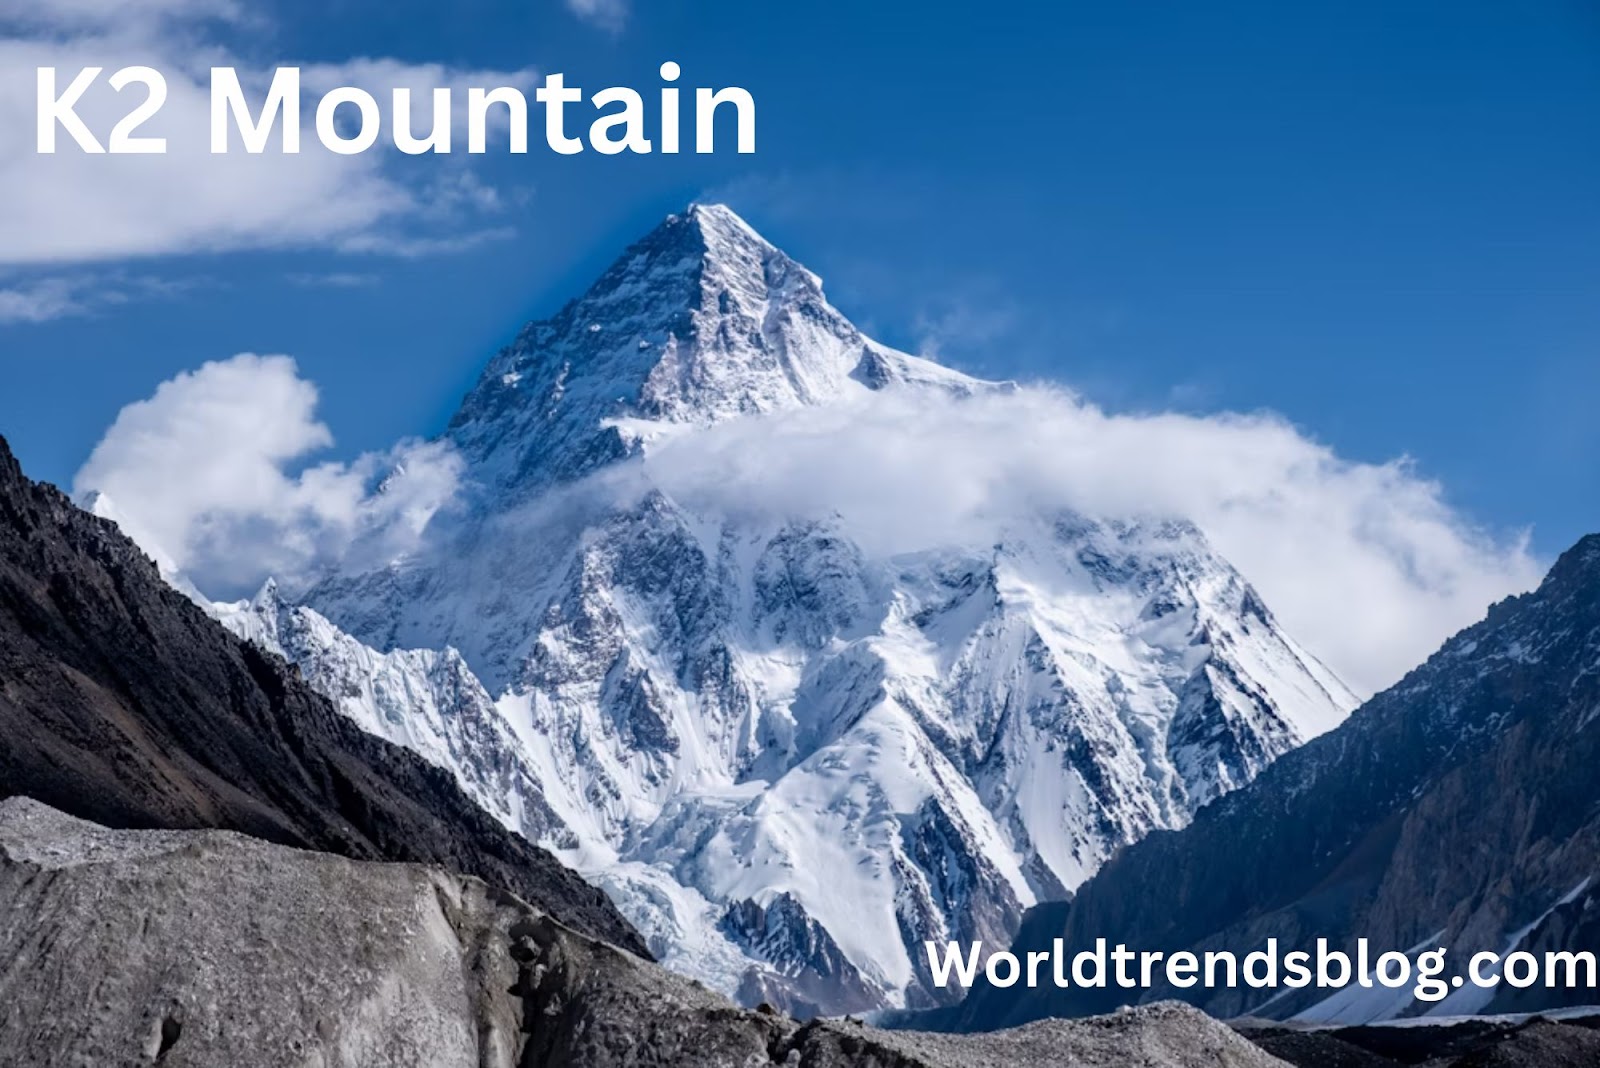 K2 Mountain Natural Wonder of Pakistan 